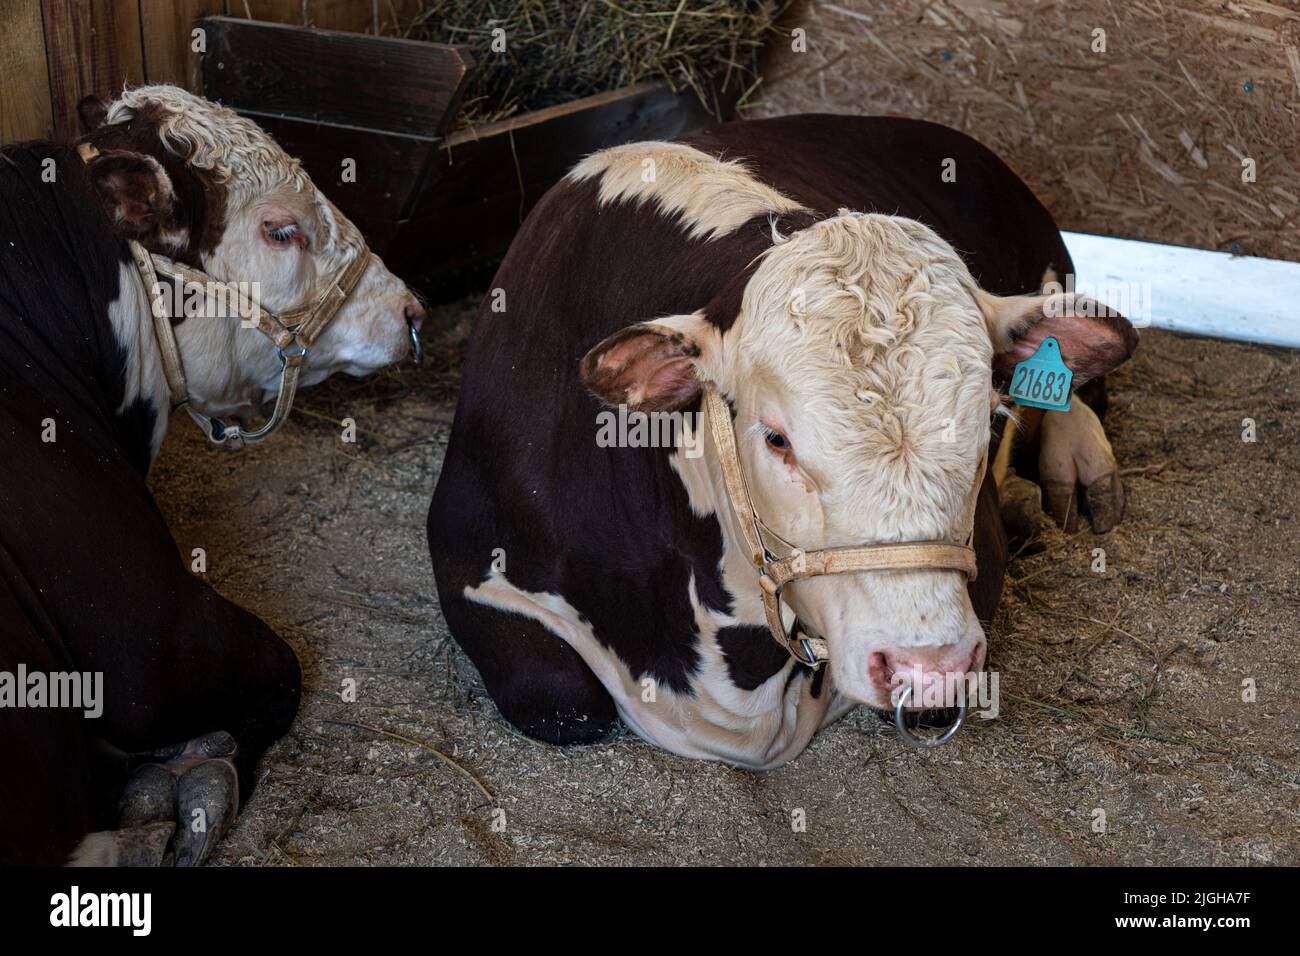 Bulls in a cattle pen.. Cattle breeding. Stock Photo